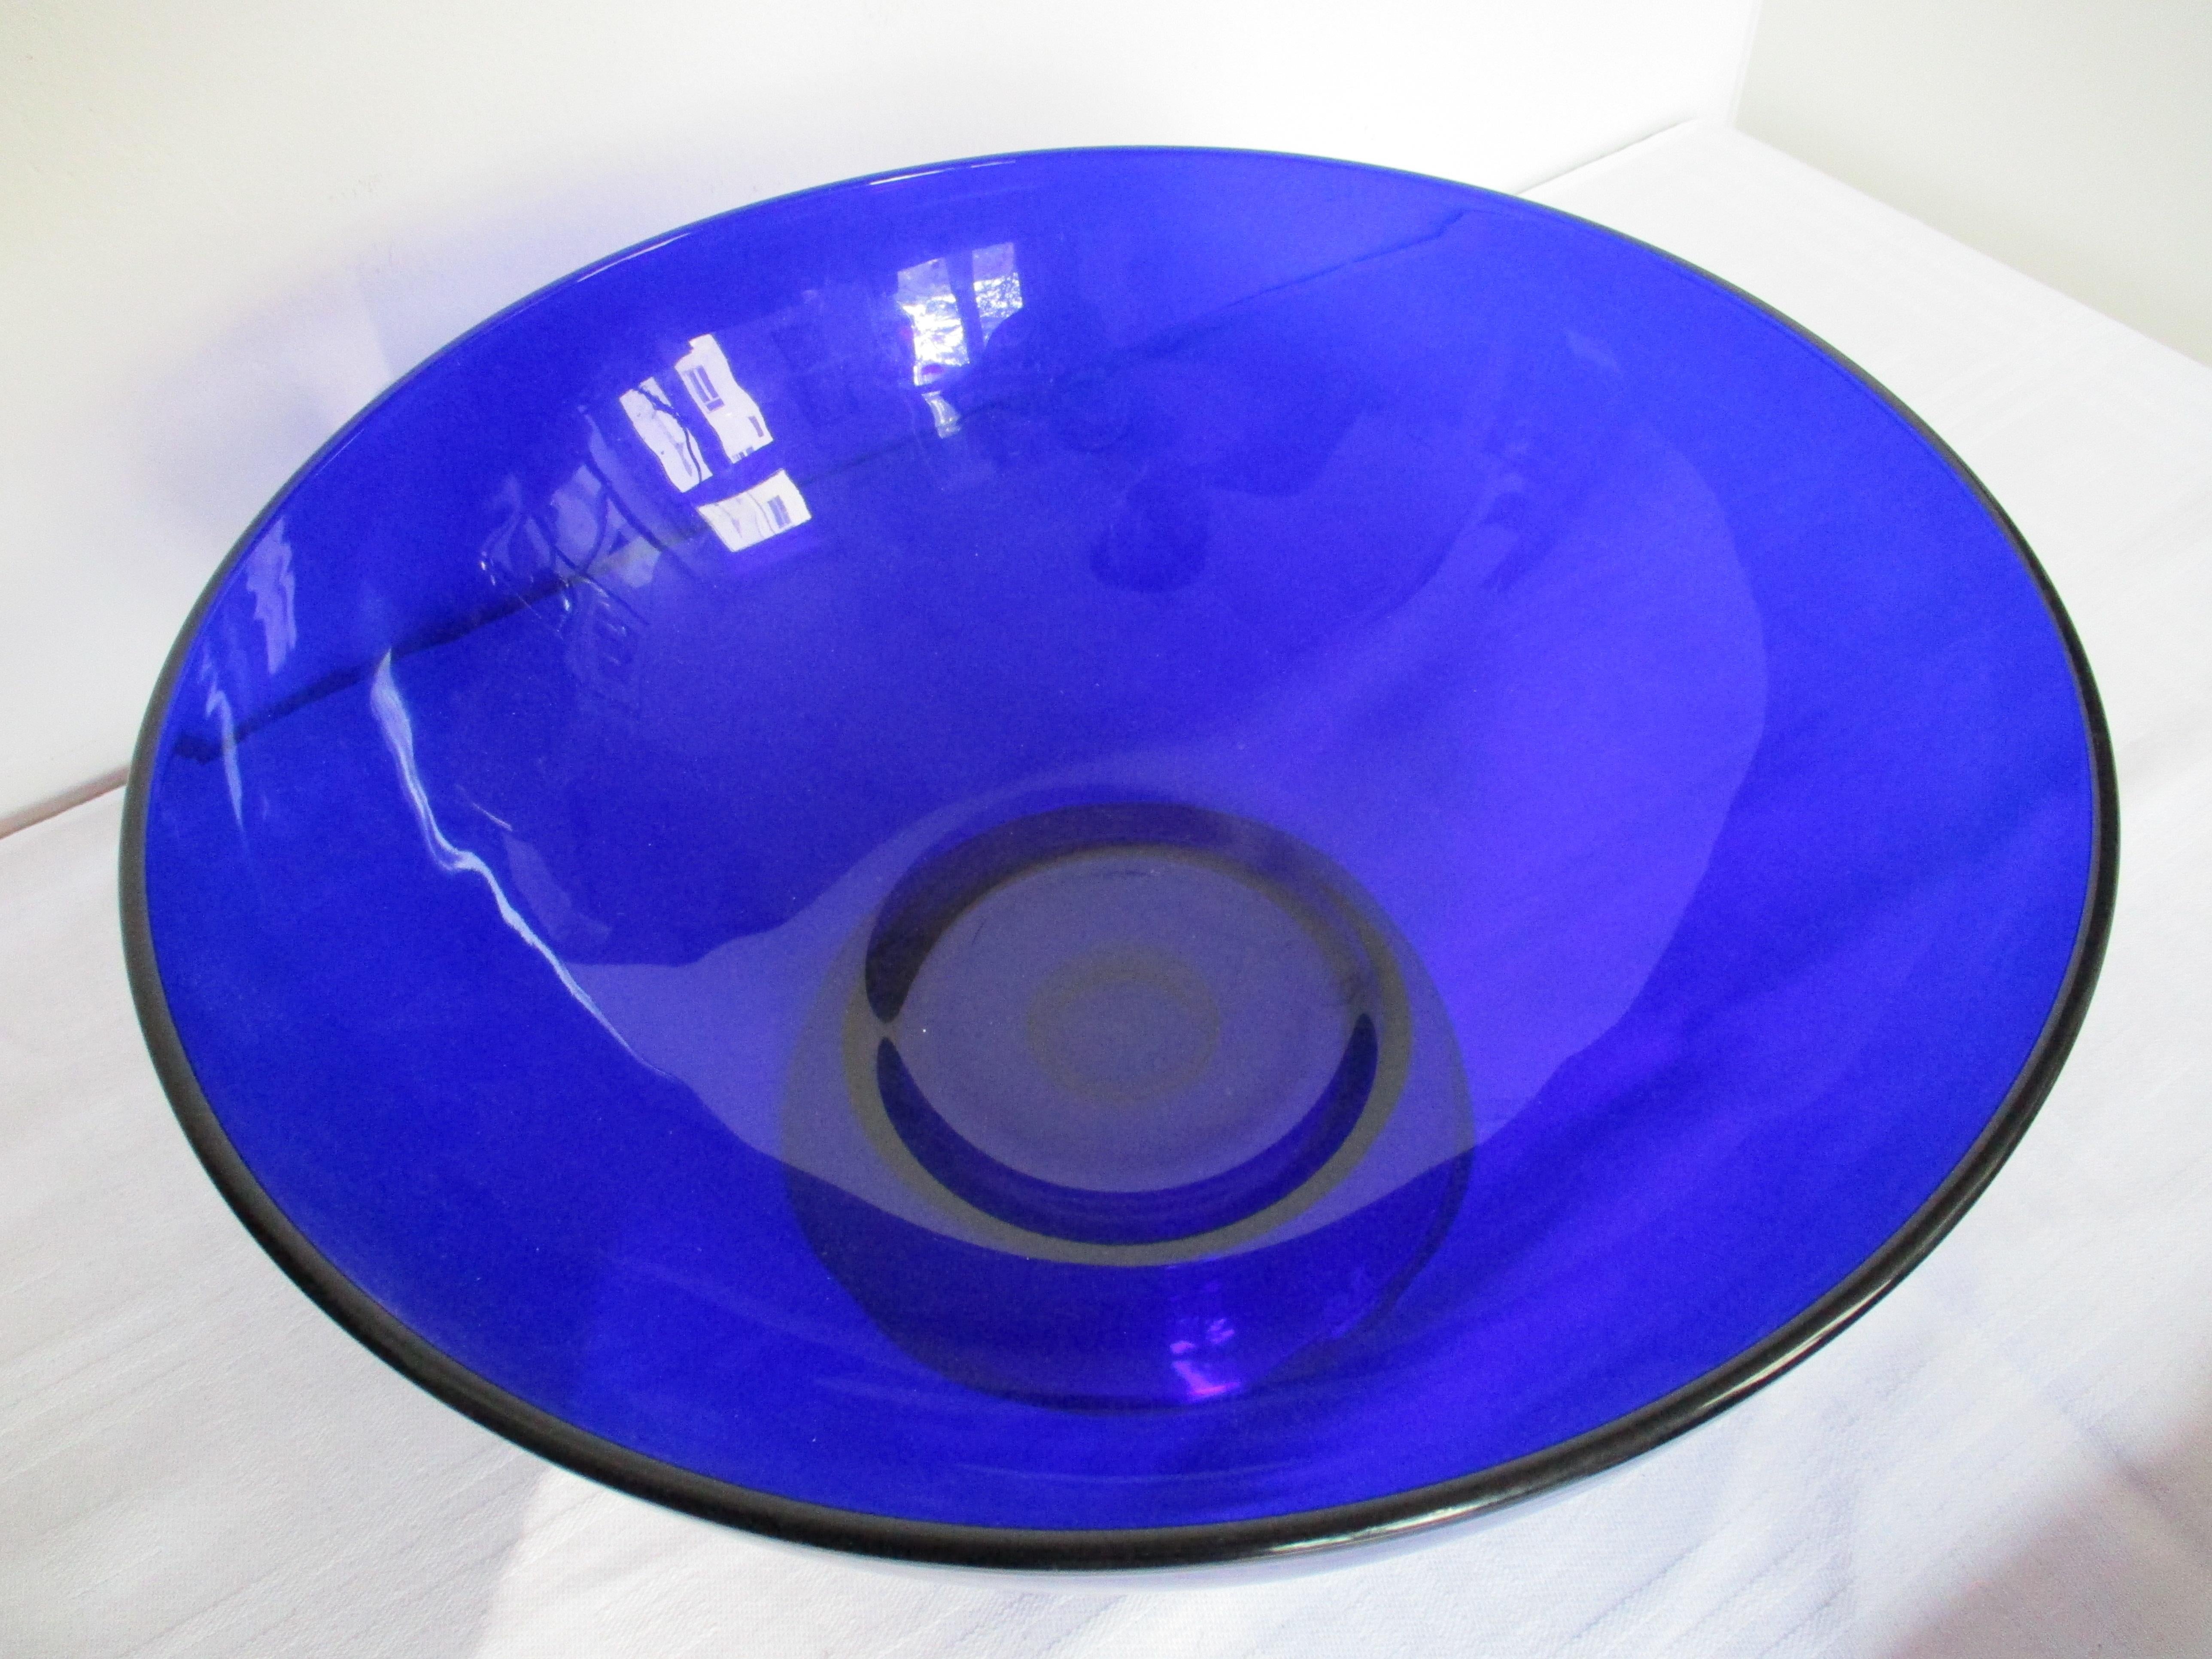 Magnifique bol bleu cobalt attribué à Josef Hoffmann et réalisé par Lobmeyer à Vienne, Autriche.
